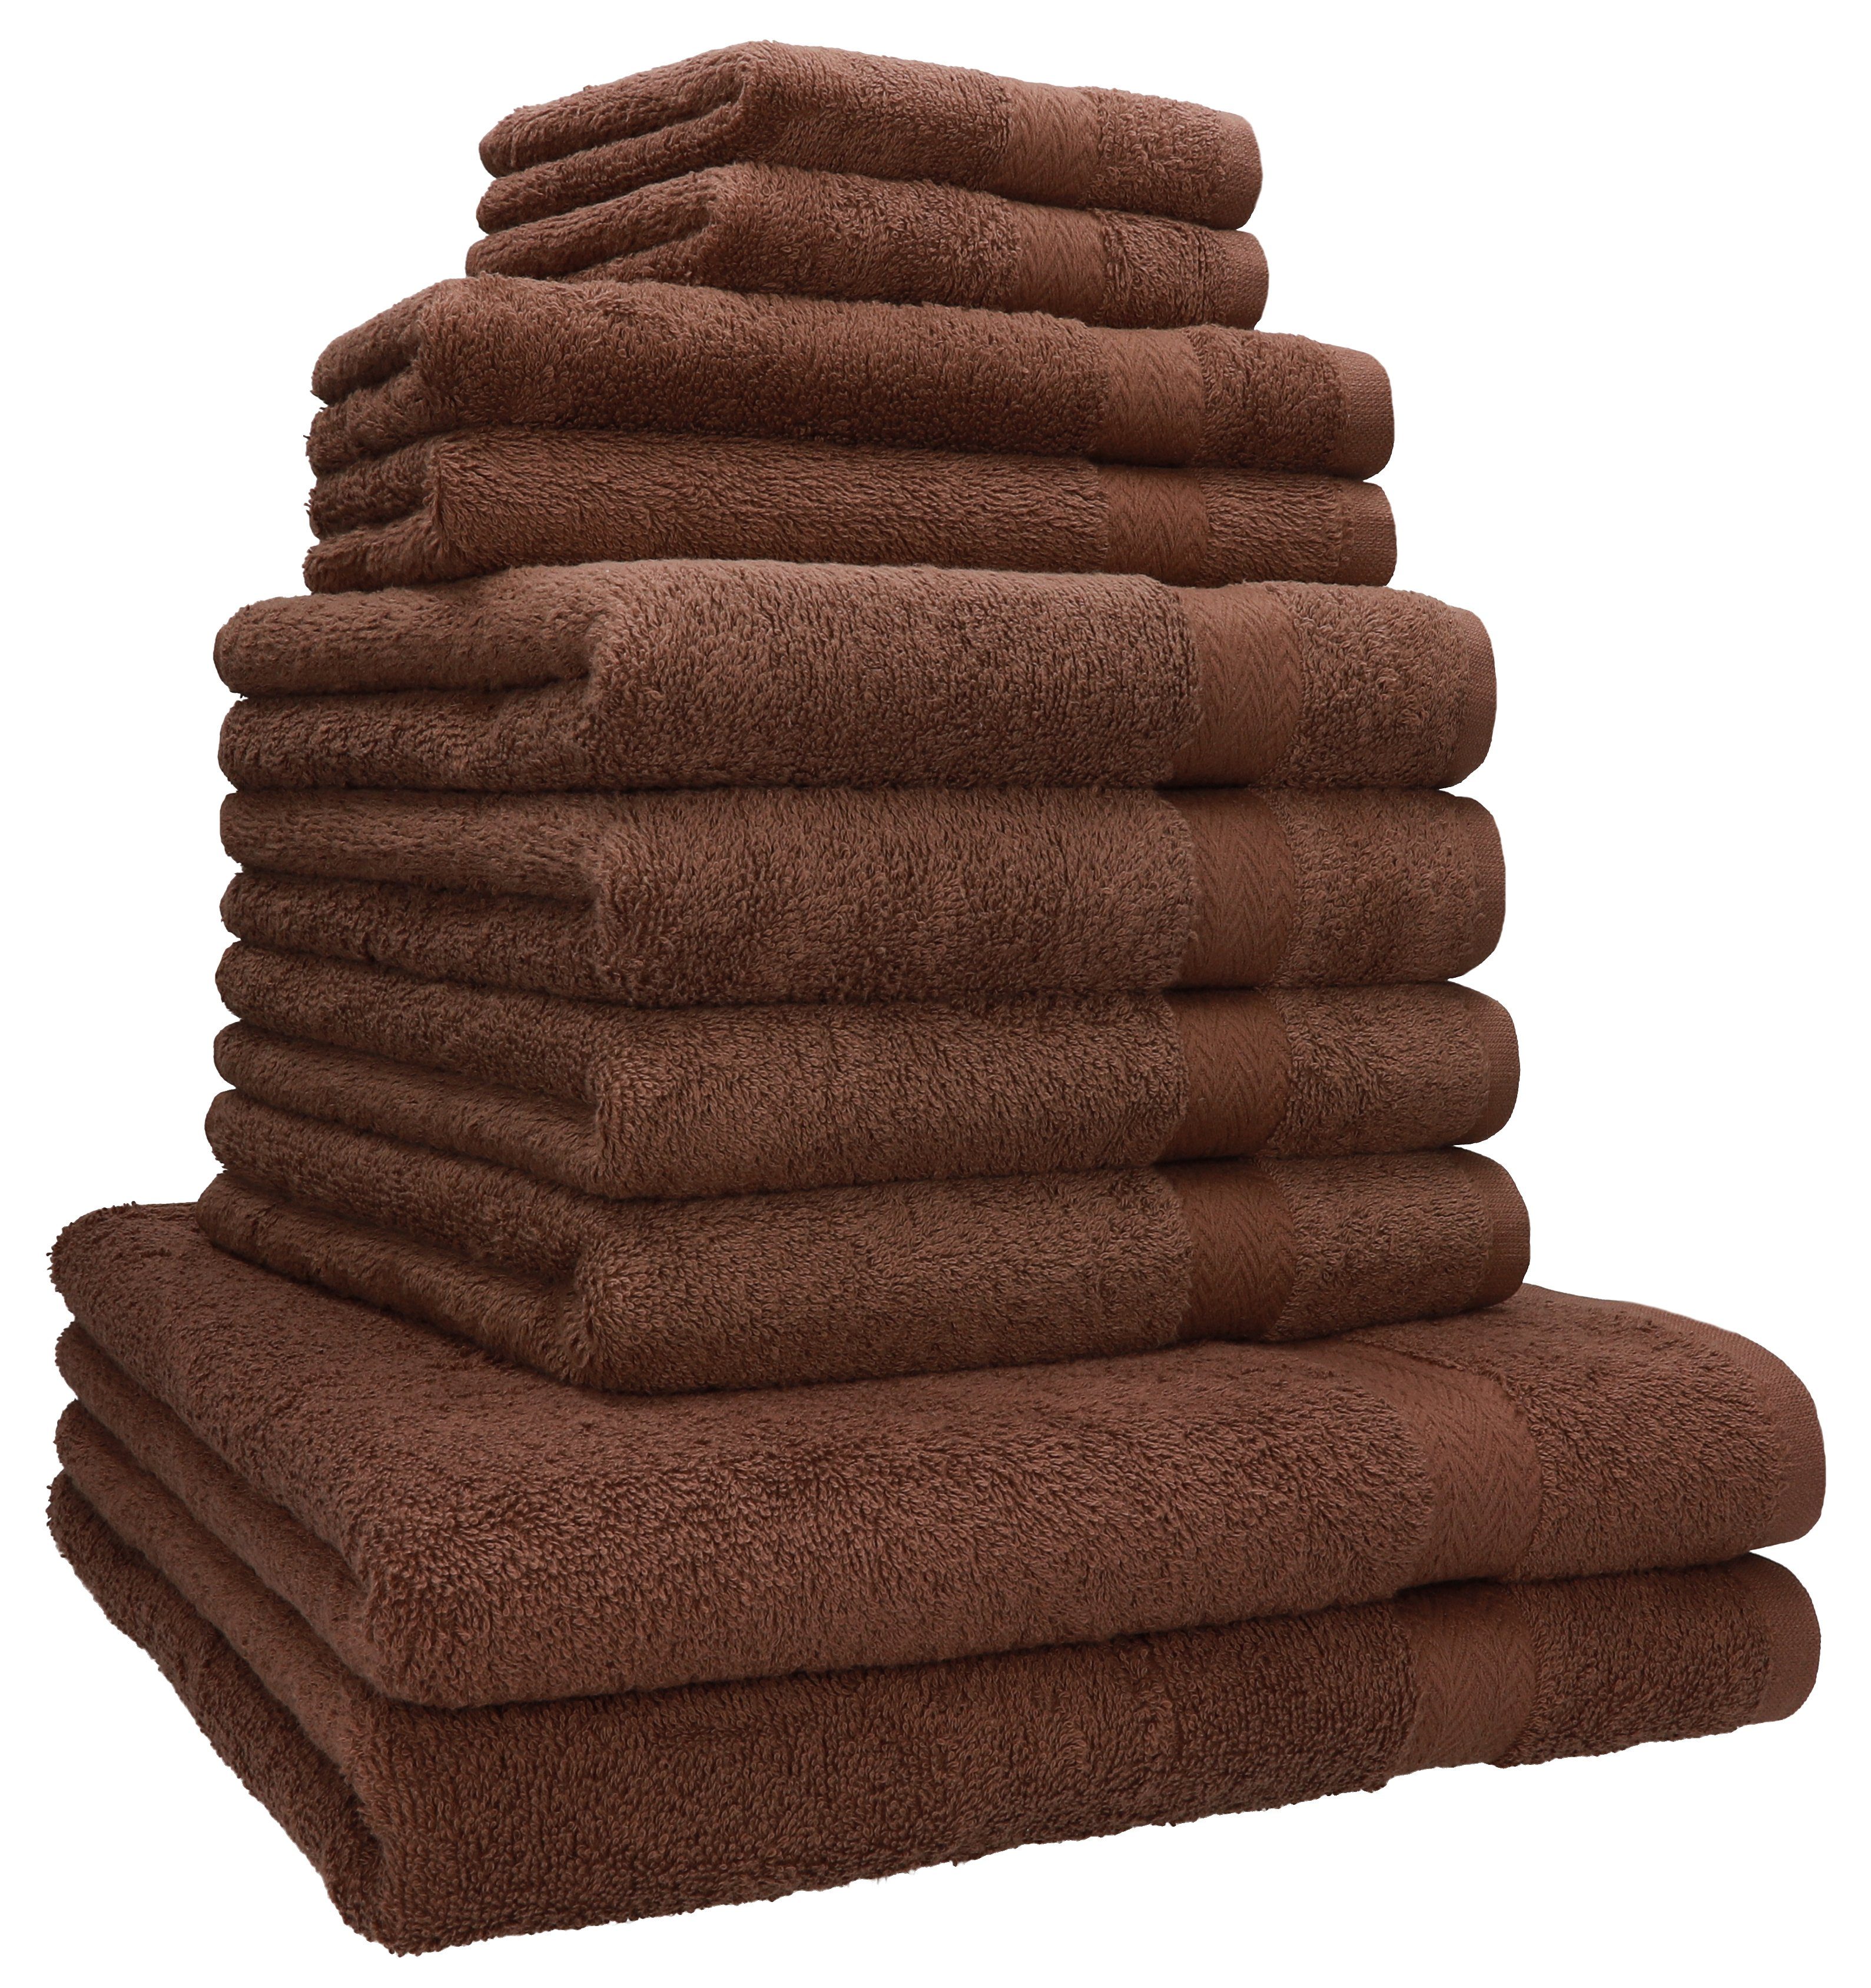 Betz Handtuch Set 10-TLG. Handtuch-Set Classic 100% Baumwolle 2 Duschtücher 4 Handtücher 2 Gästetücher 2 Seiftücher, 100% Baumwolle, (10-tlg) nuss